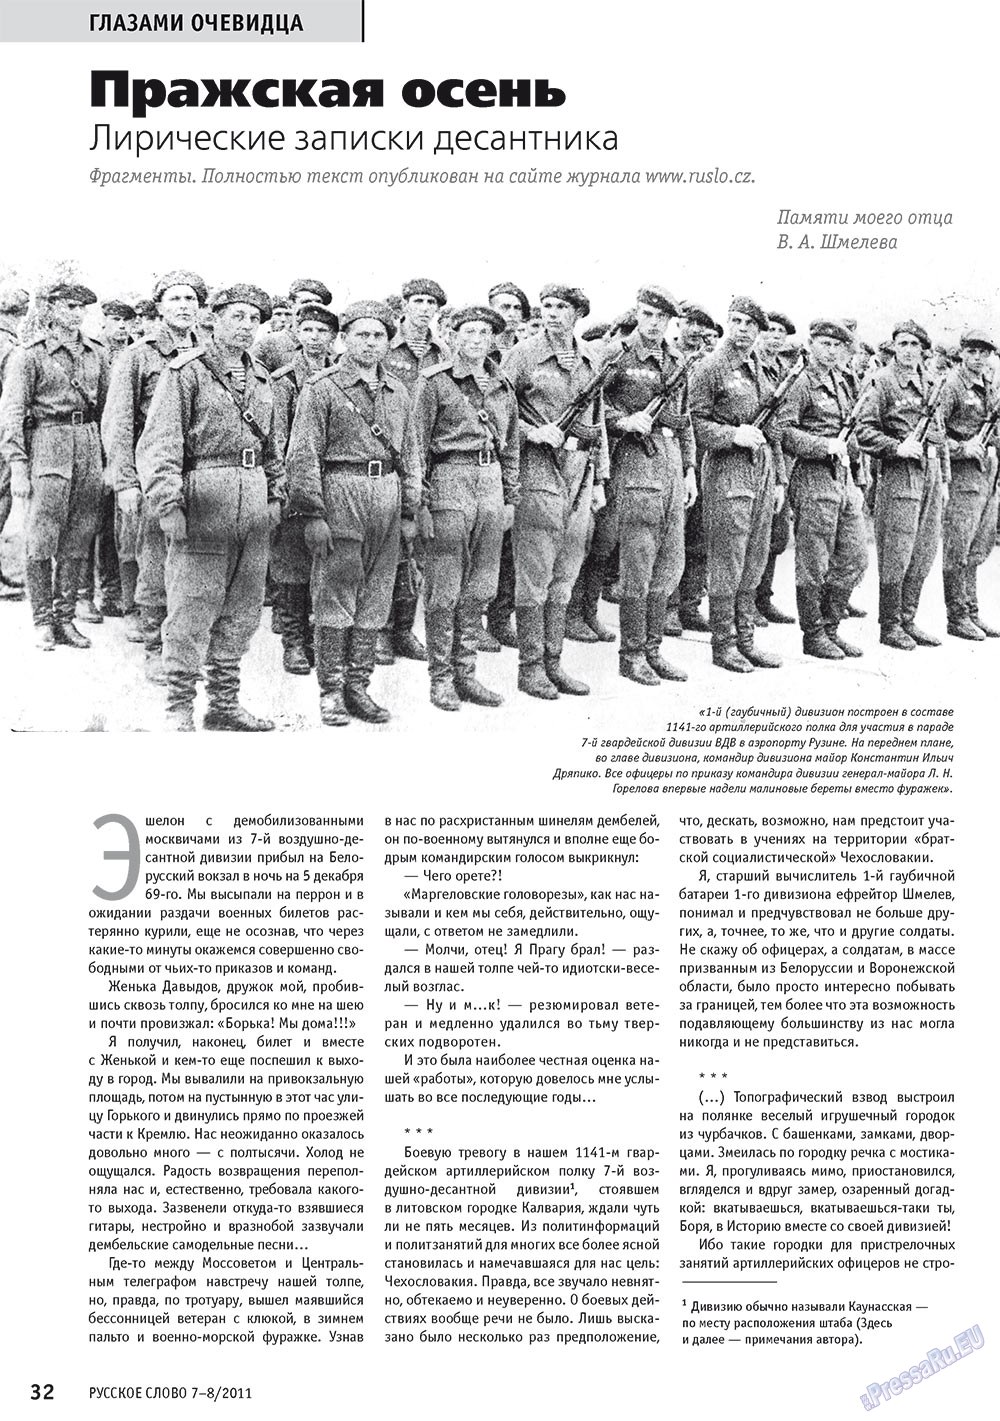 Русское слово (журнал). 2011 год, номер 7, стр. 34